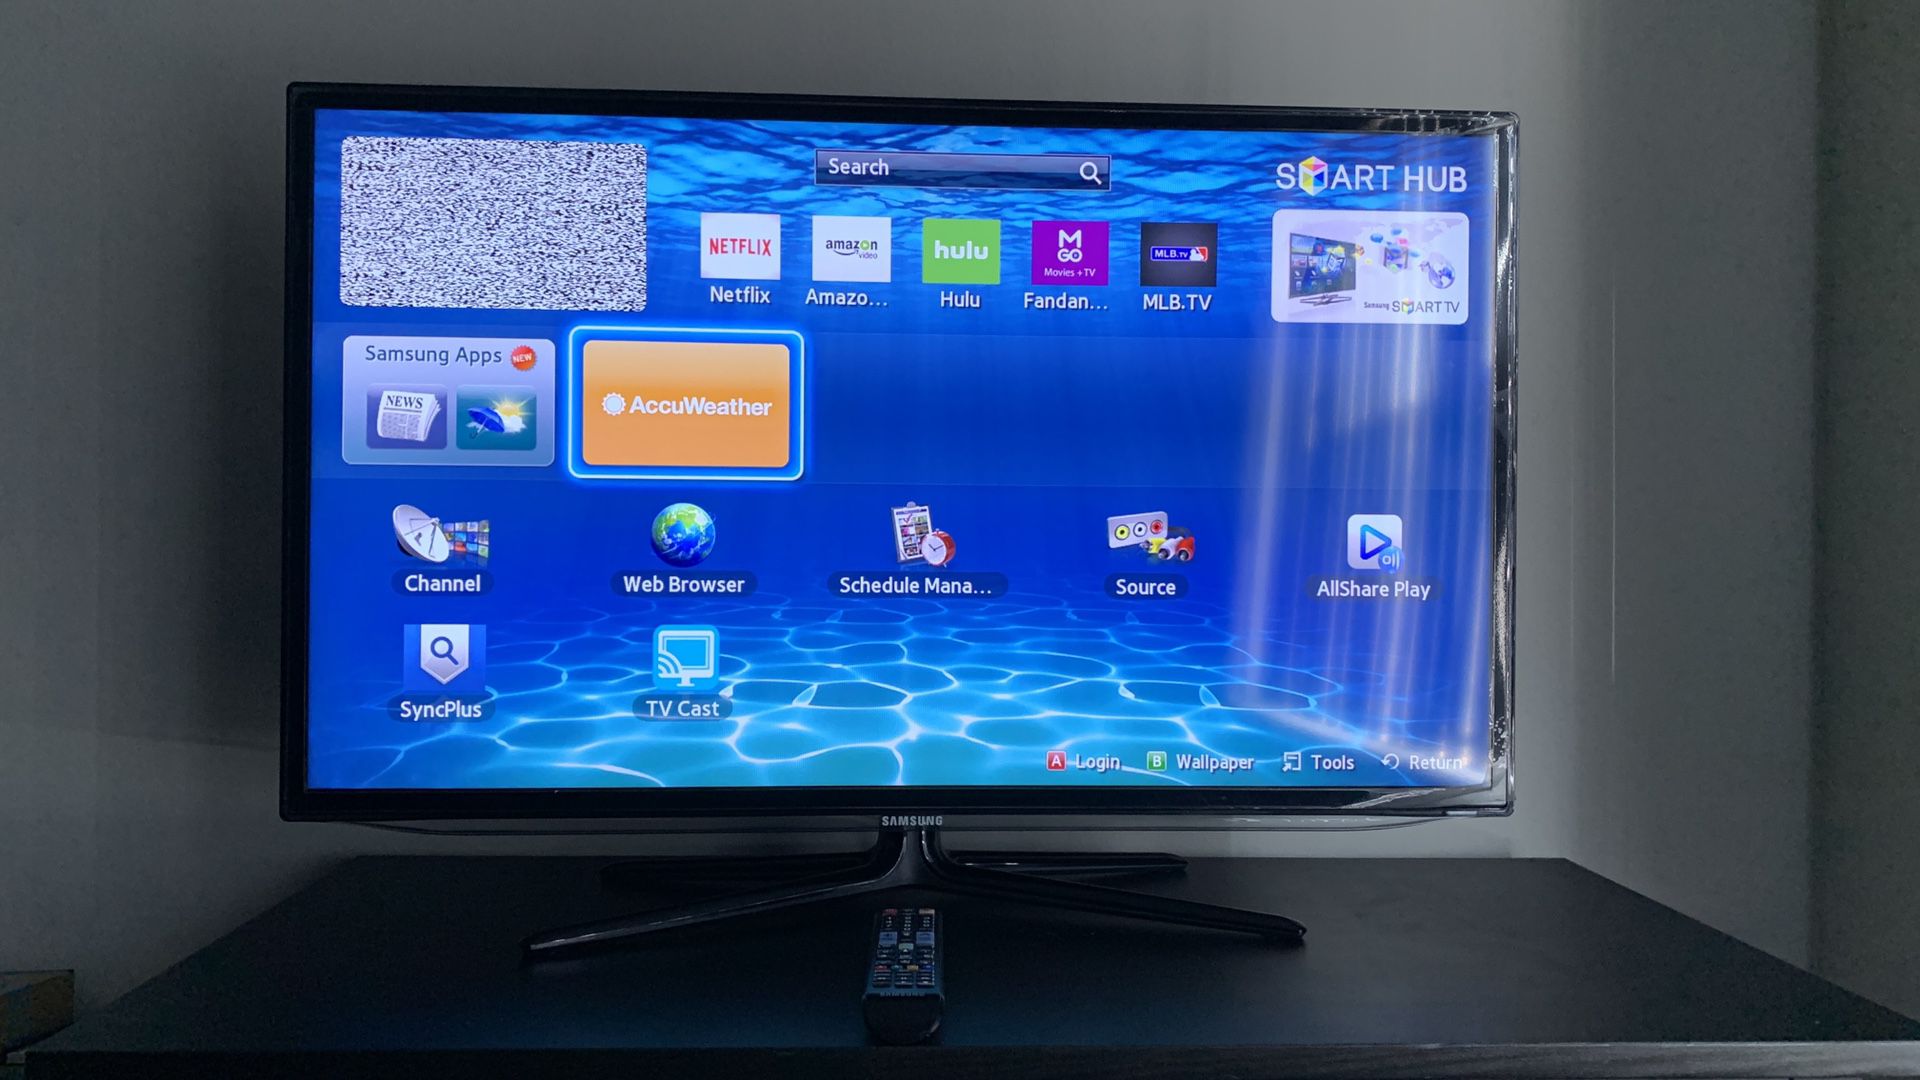 Samsung 40” Slim LED SMART TV - (1080p)